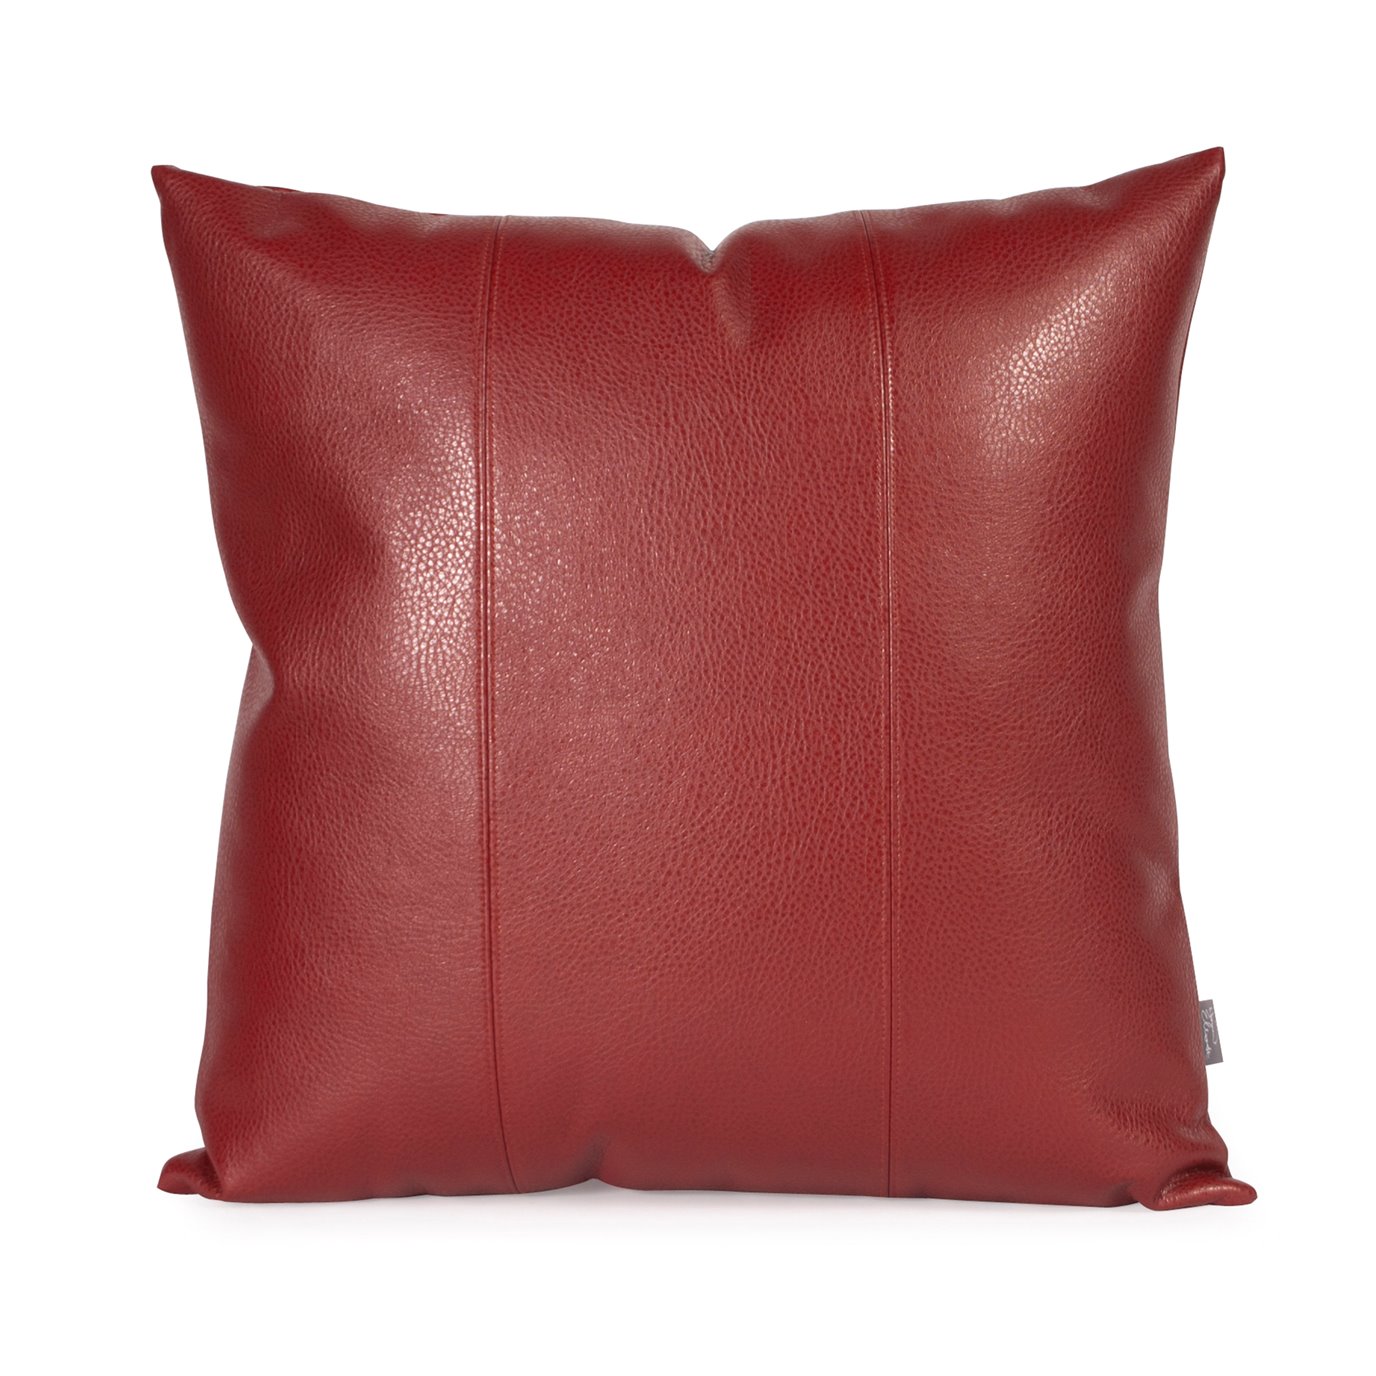 Howard Elliott 20" x 20" Pillow Faux Leather Avanti Apple